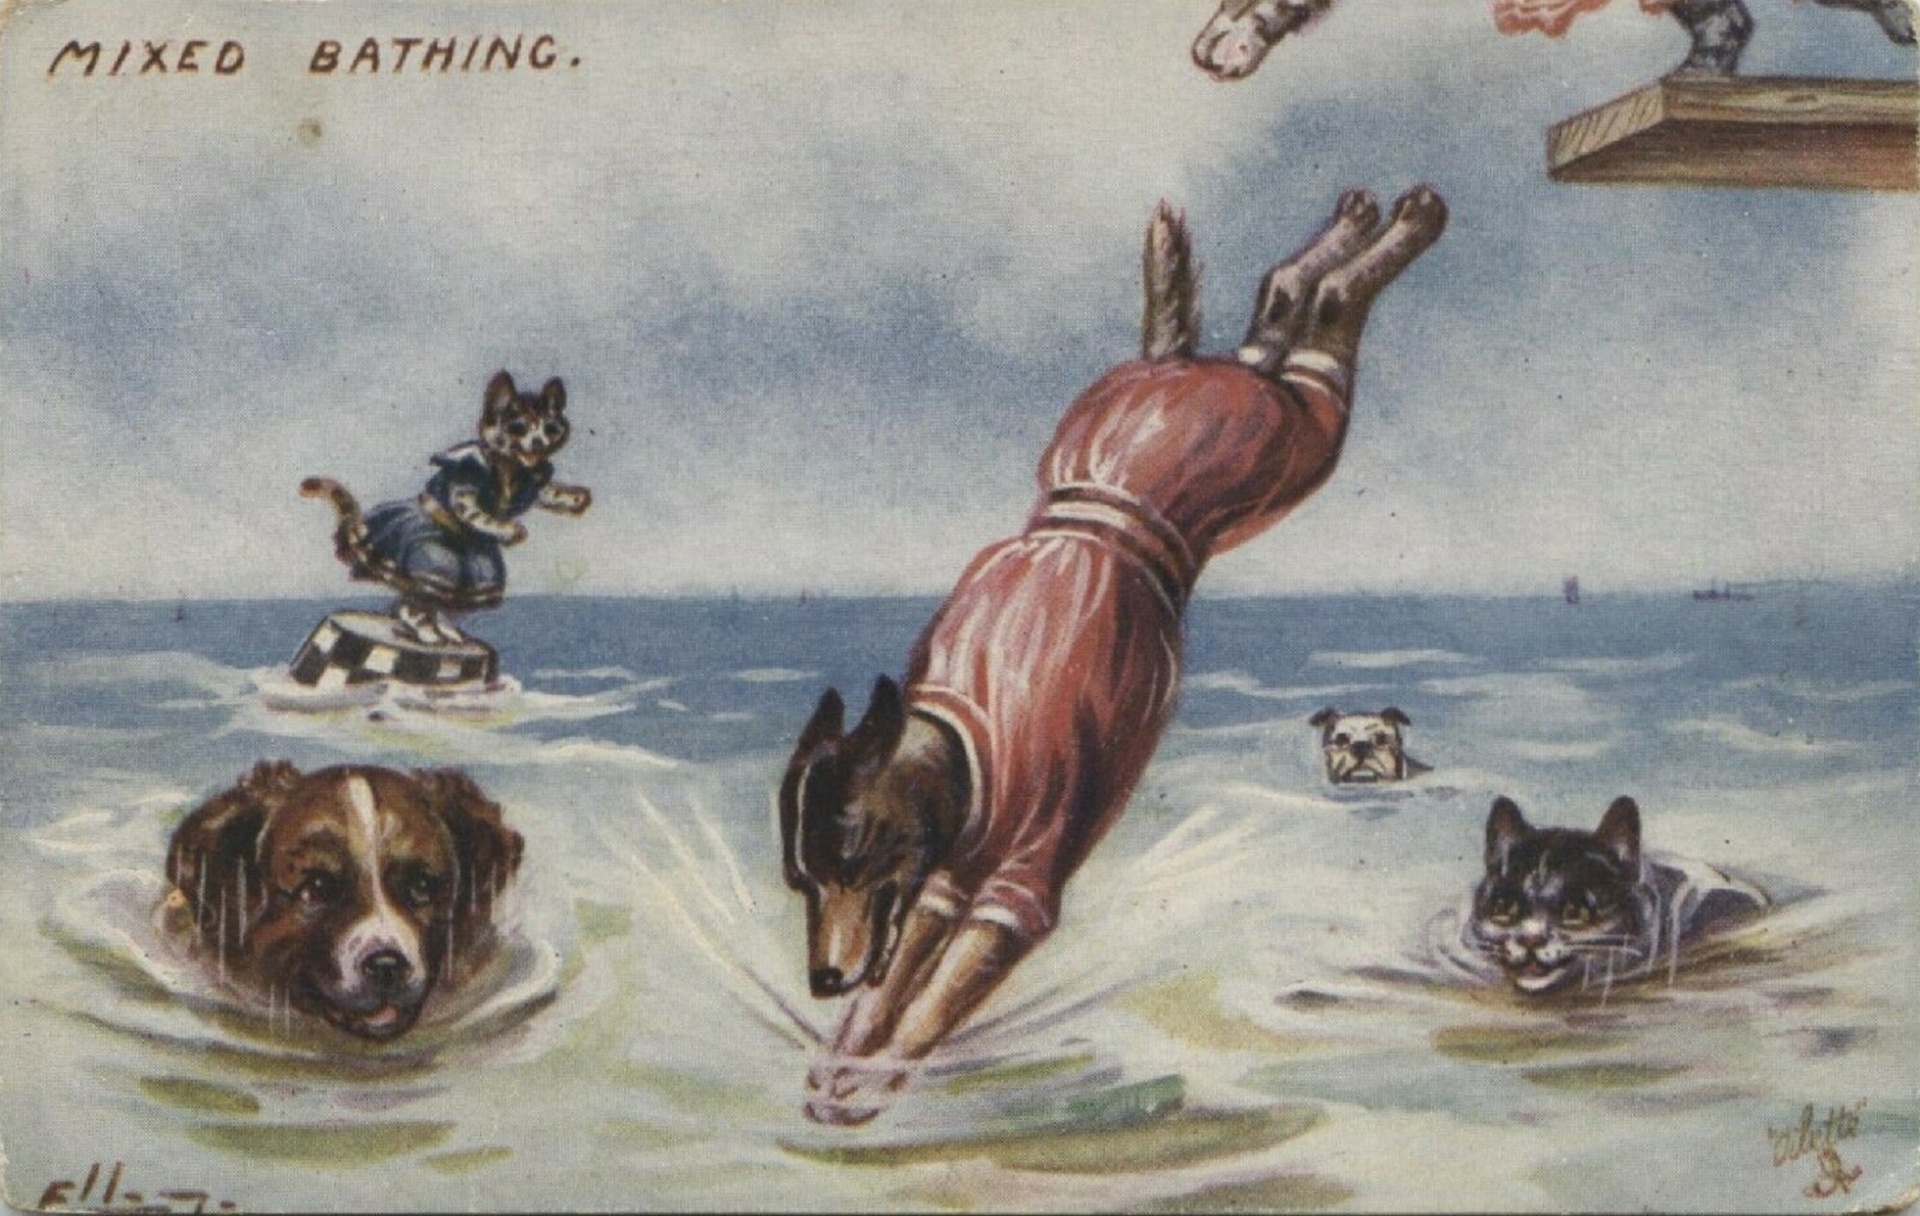 Cães e gatos misturados ao banho por Ell